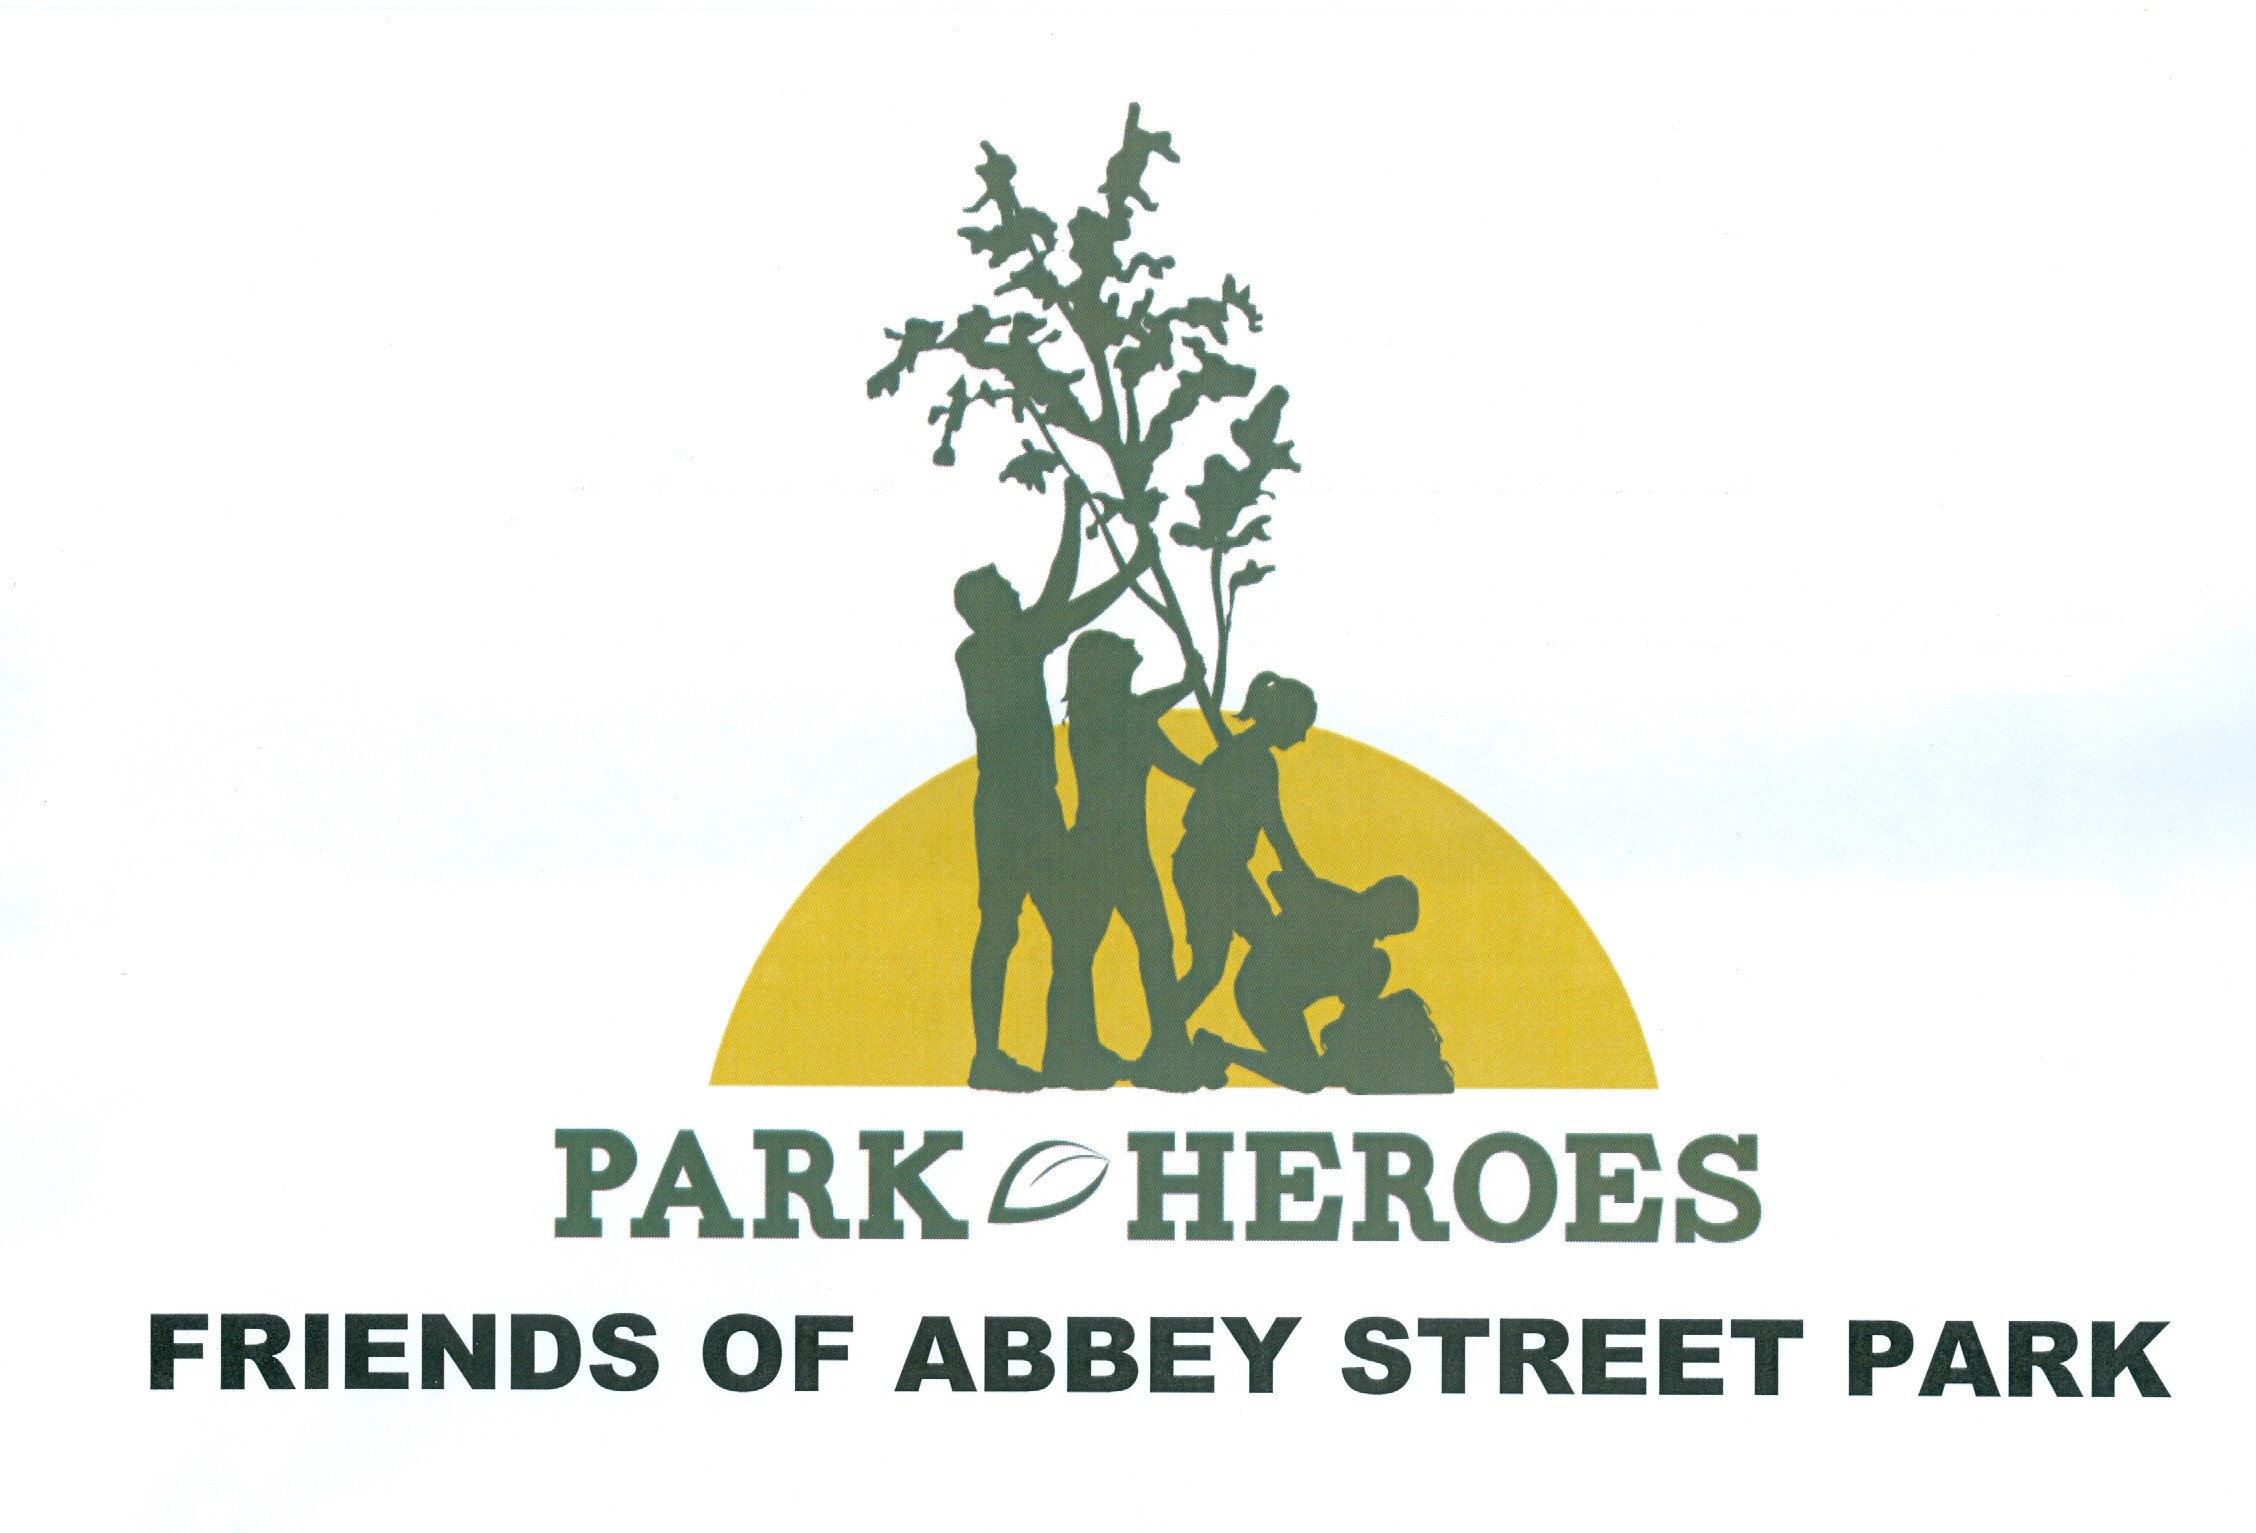 Friends of Abbey Street Park